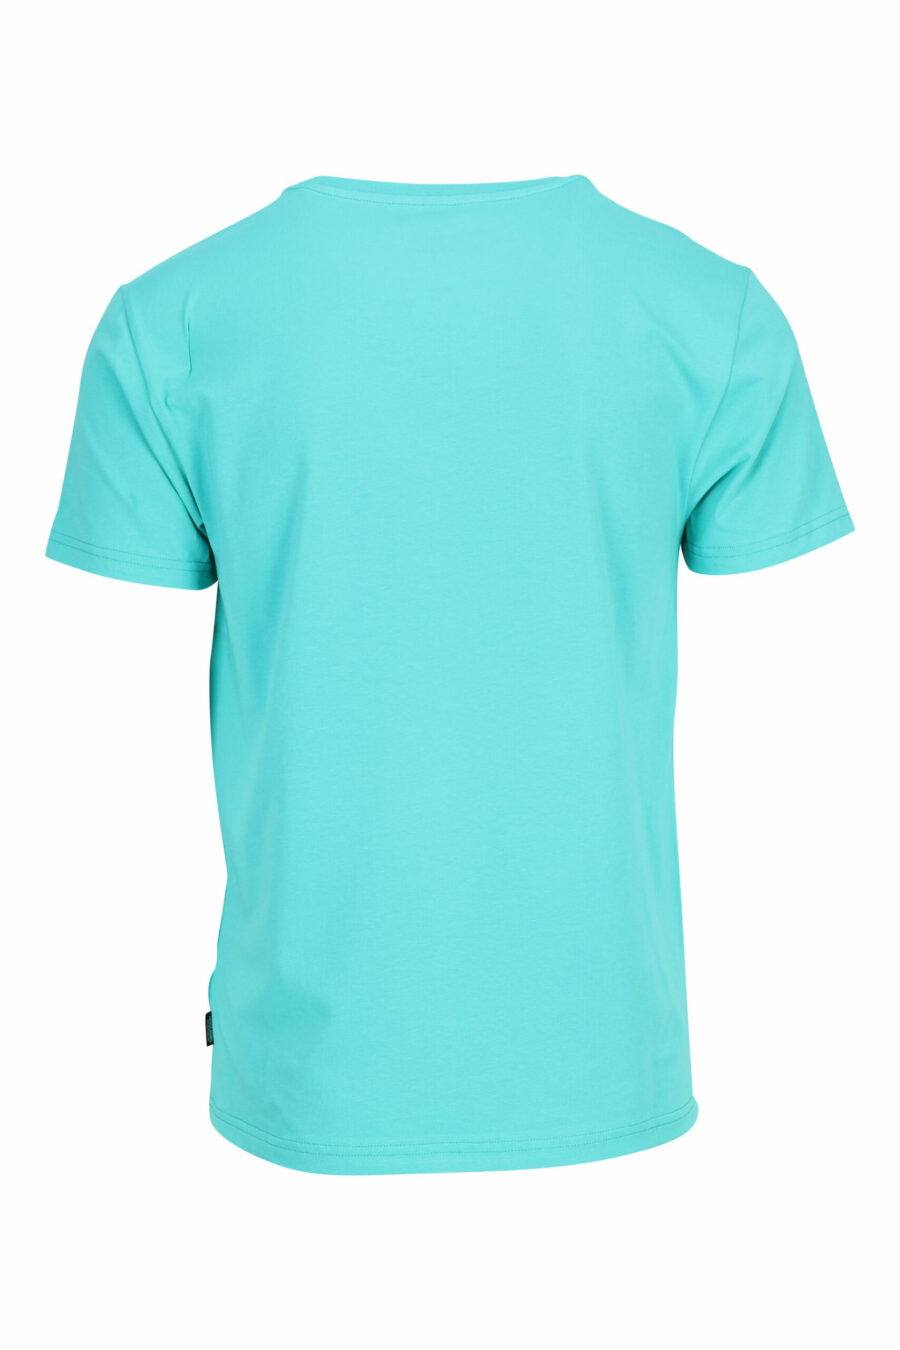 T-shirt vert menthe avec minilogo ours "underbear" en caoutchouc jaune - 667113602684 à l'échelle 1